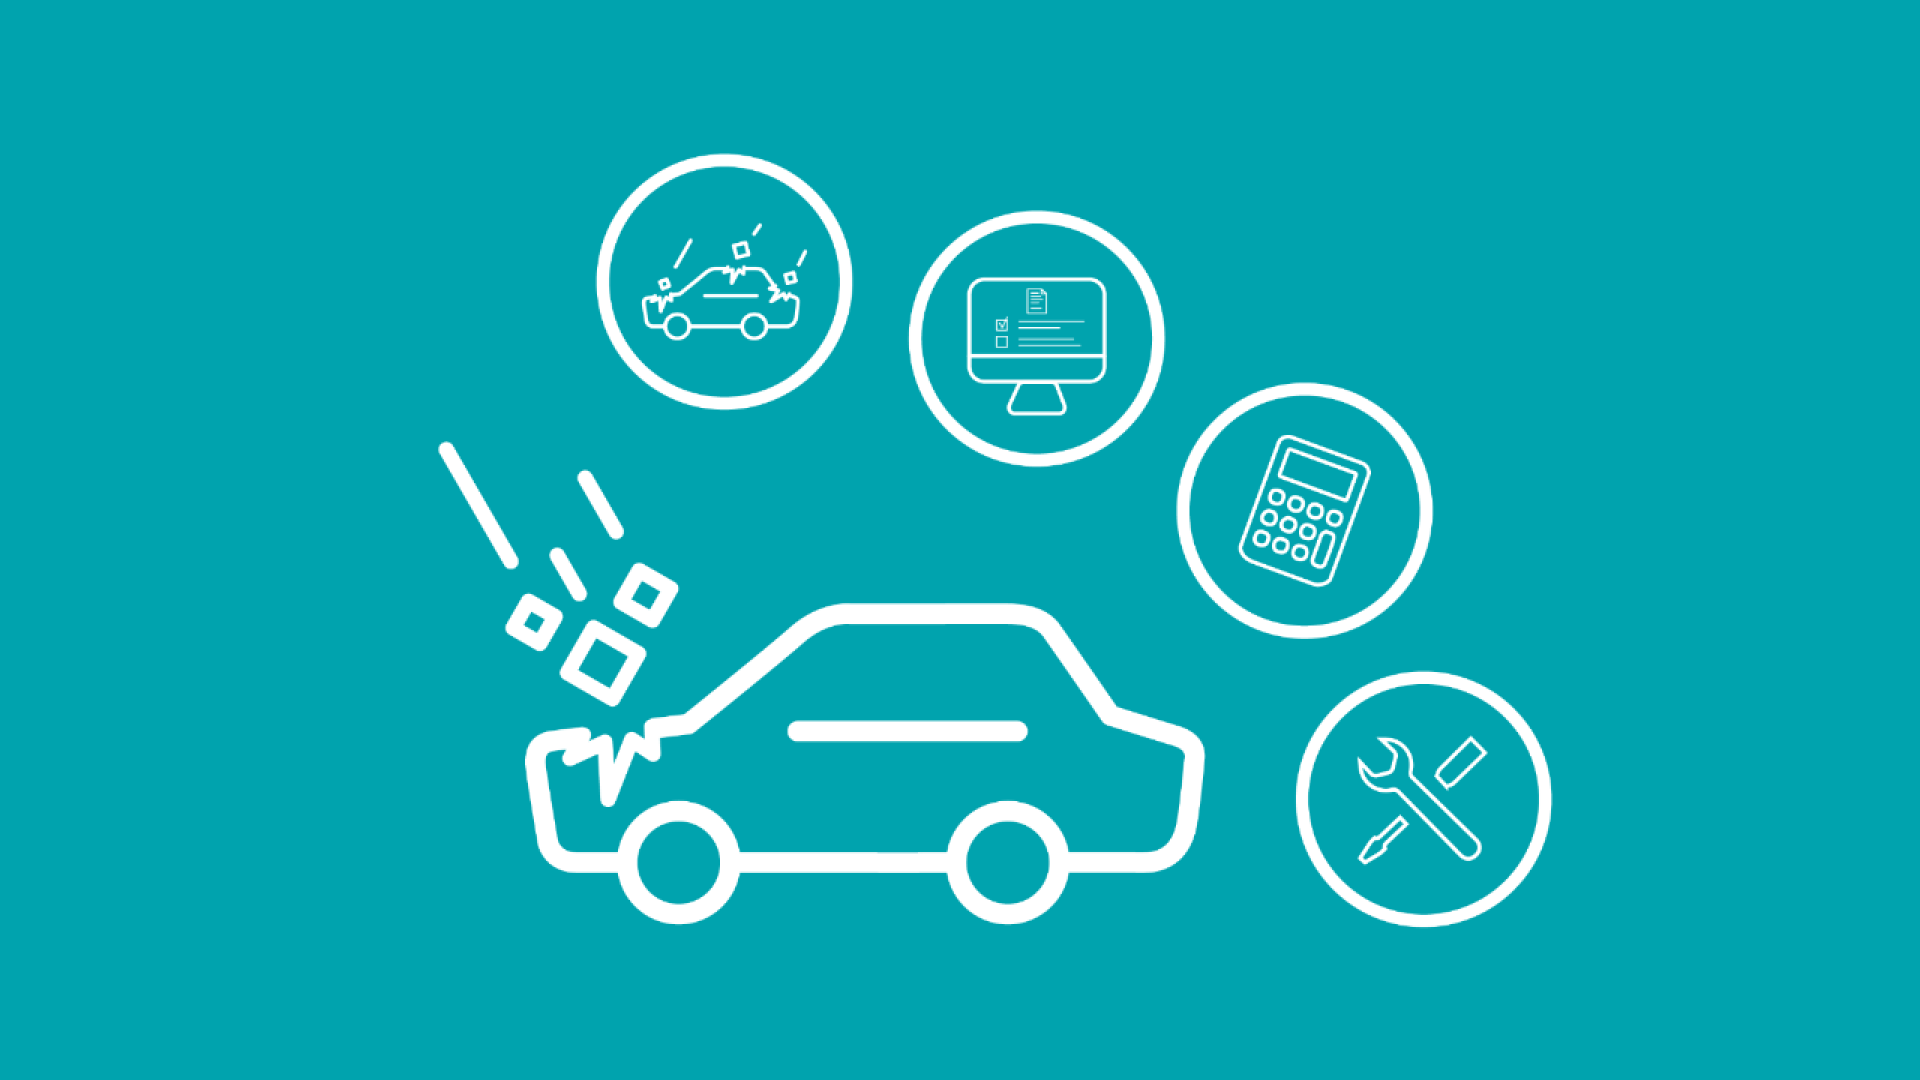 Die Grafik zeigt ein Auto mit einem Hagelschaden und vier Icons, welche die Herangehensweise nach einem Hagelschaden darstellen.